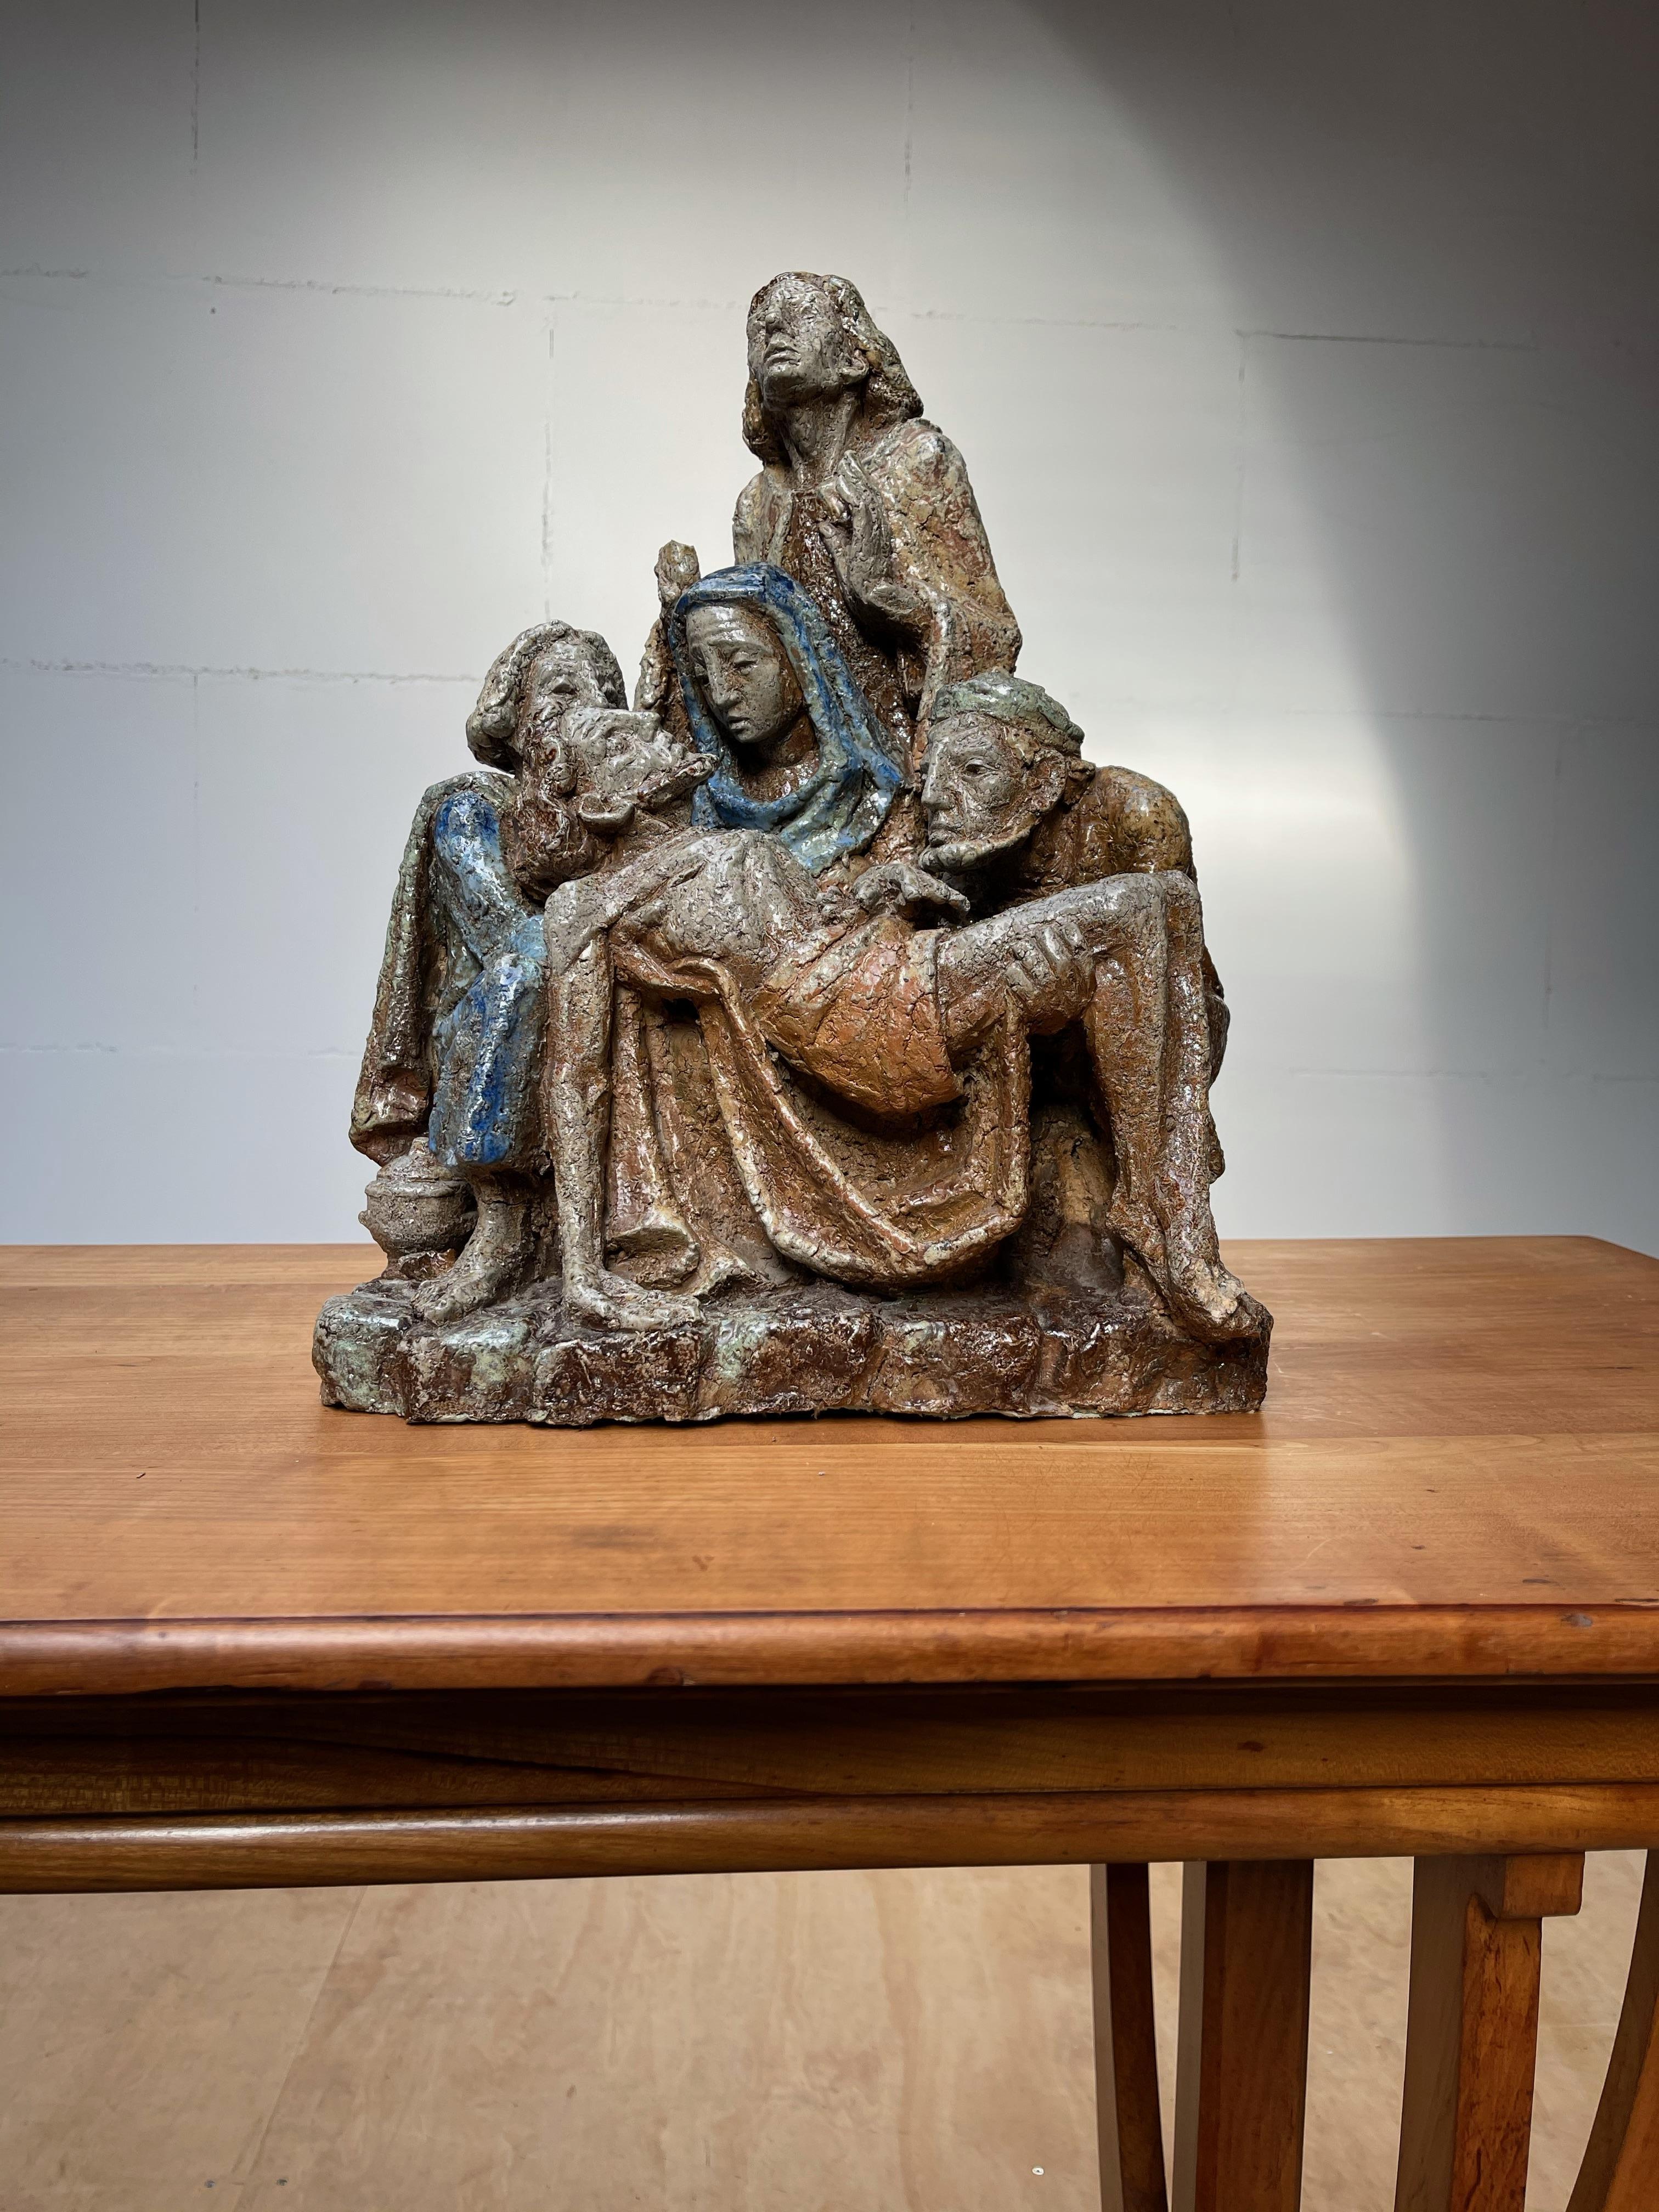 Einzigartige und handgefertigte Skulptur.

Wie viele von Ihnen wissen, stellt die Pietà den Leichnam Jesu nach der Kreuzigung auf dem Schoß der Mutter Maria dar. Im Laufe der Jahre haben wir diese berühmte biblische Szene in allen möglichen